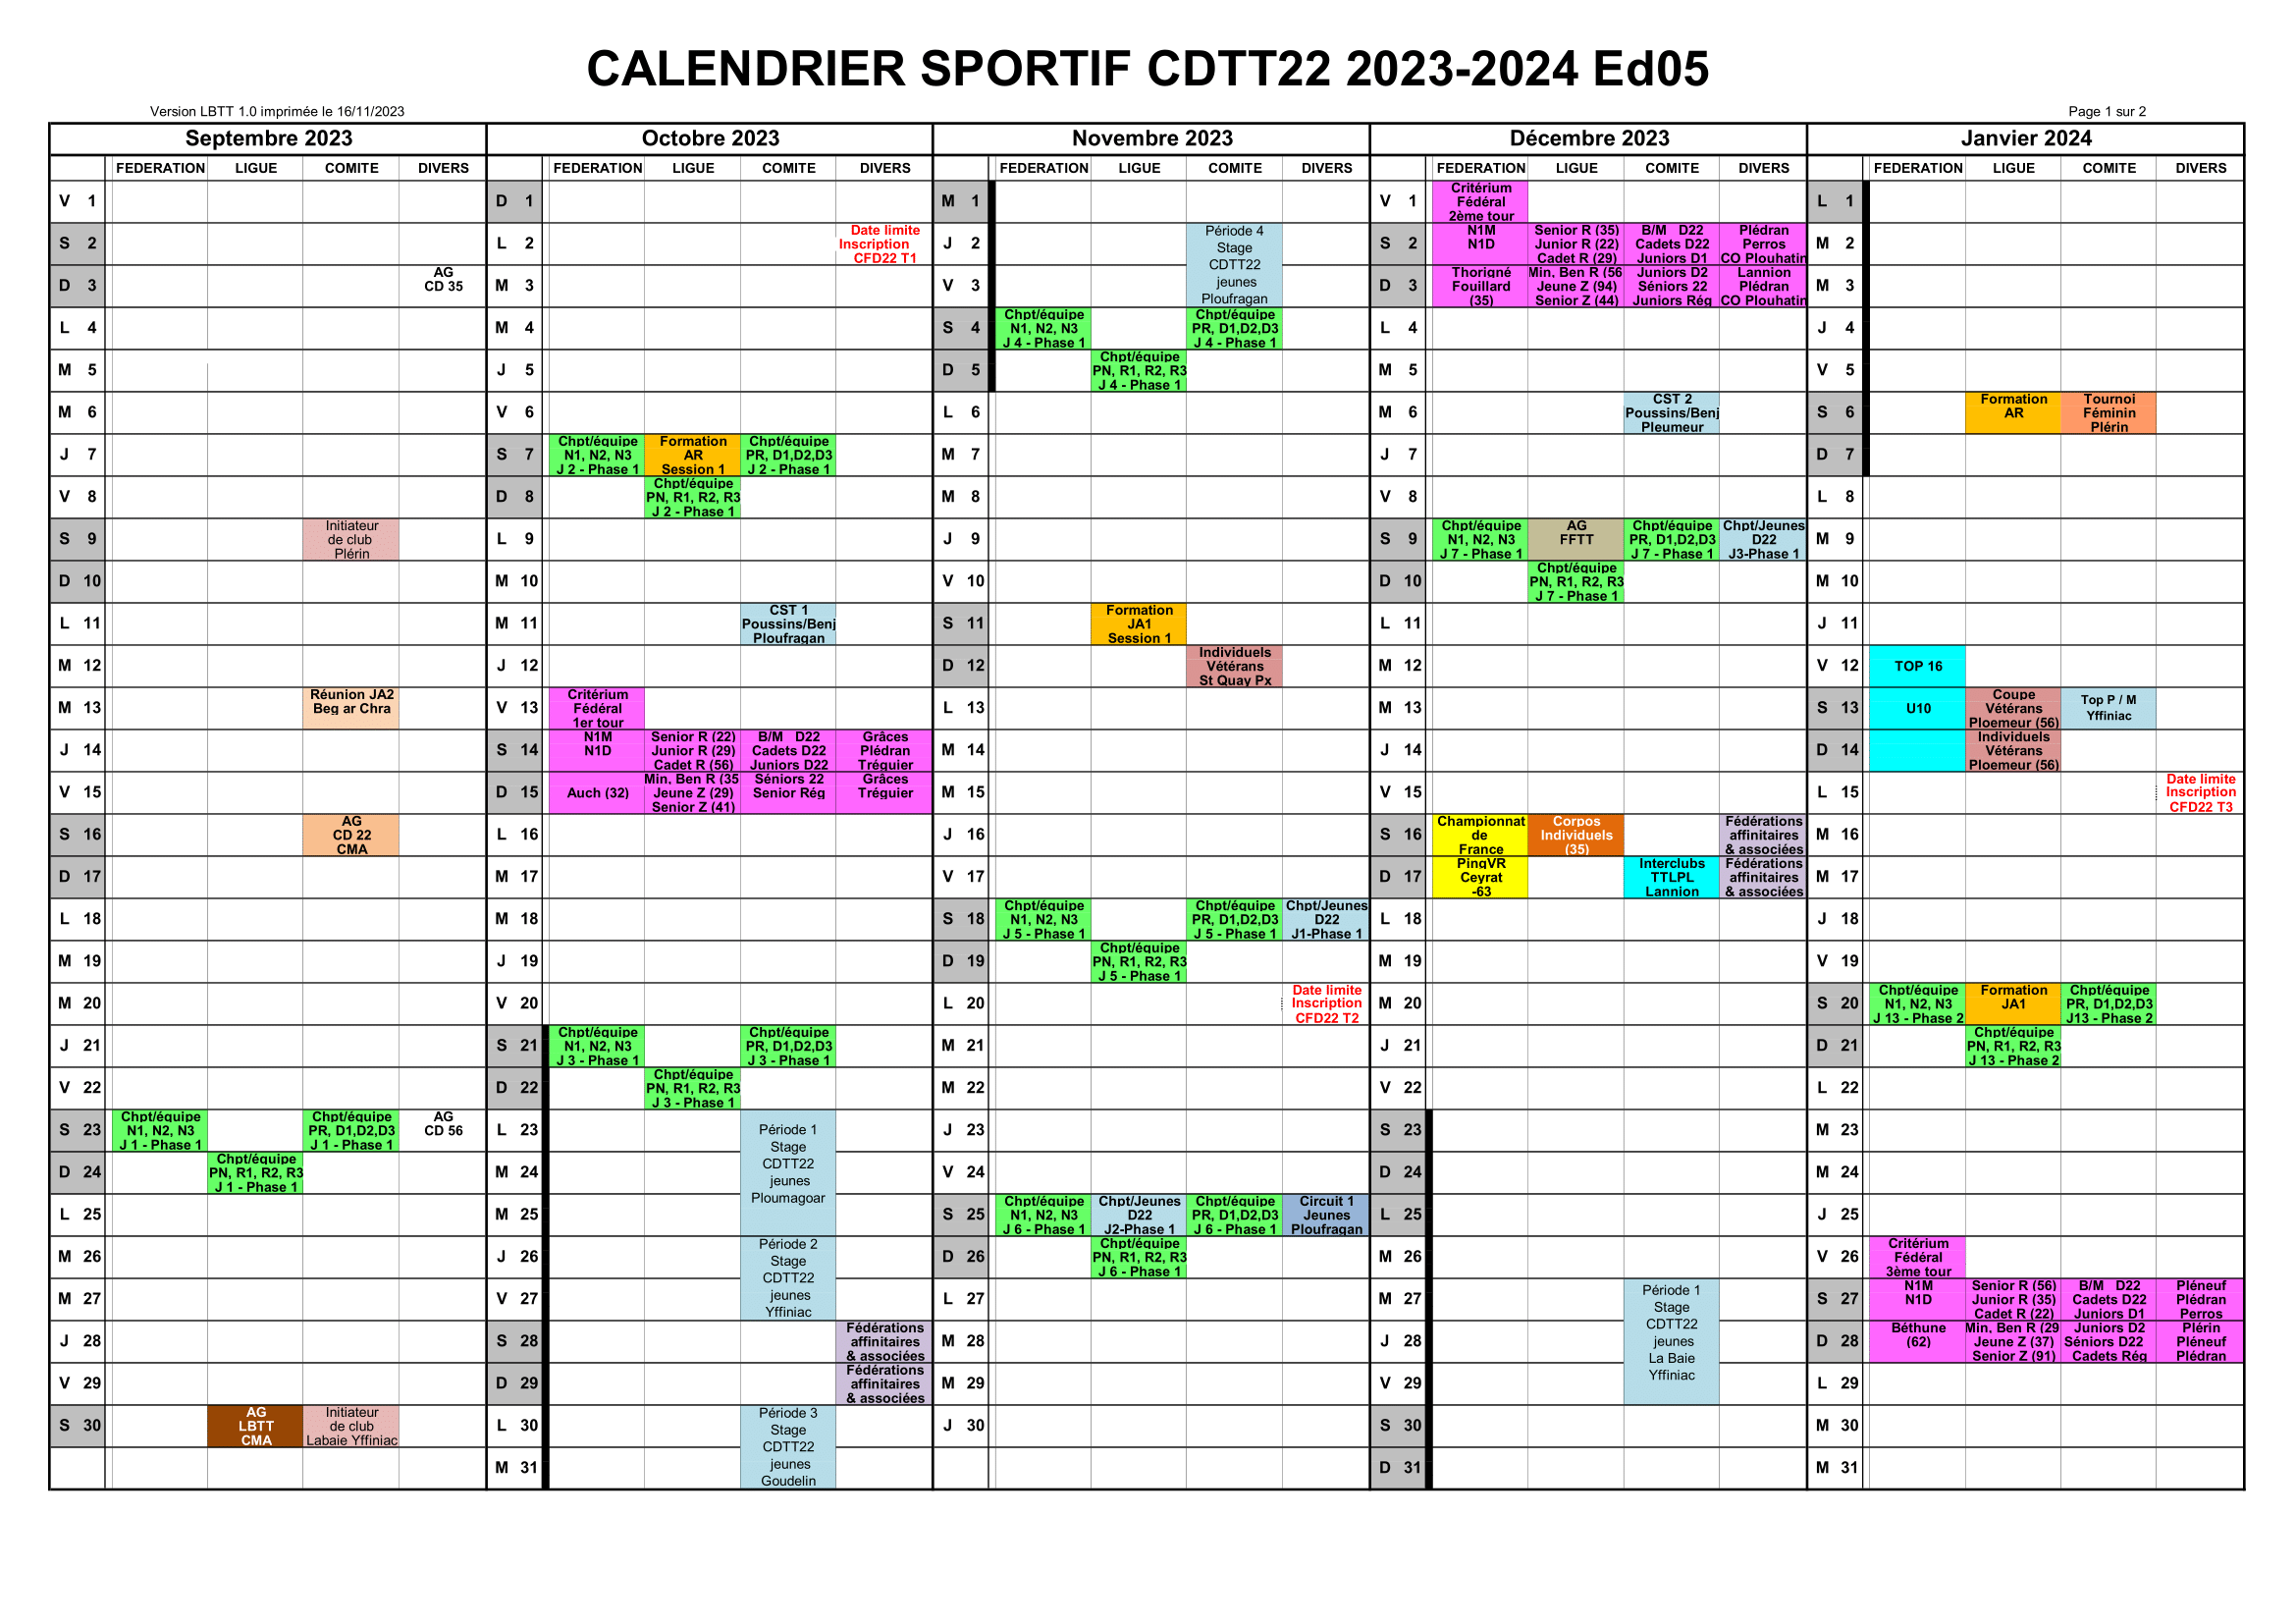 Calendrier sportif CDTT22 saison 2023-2024